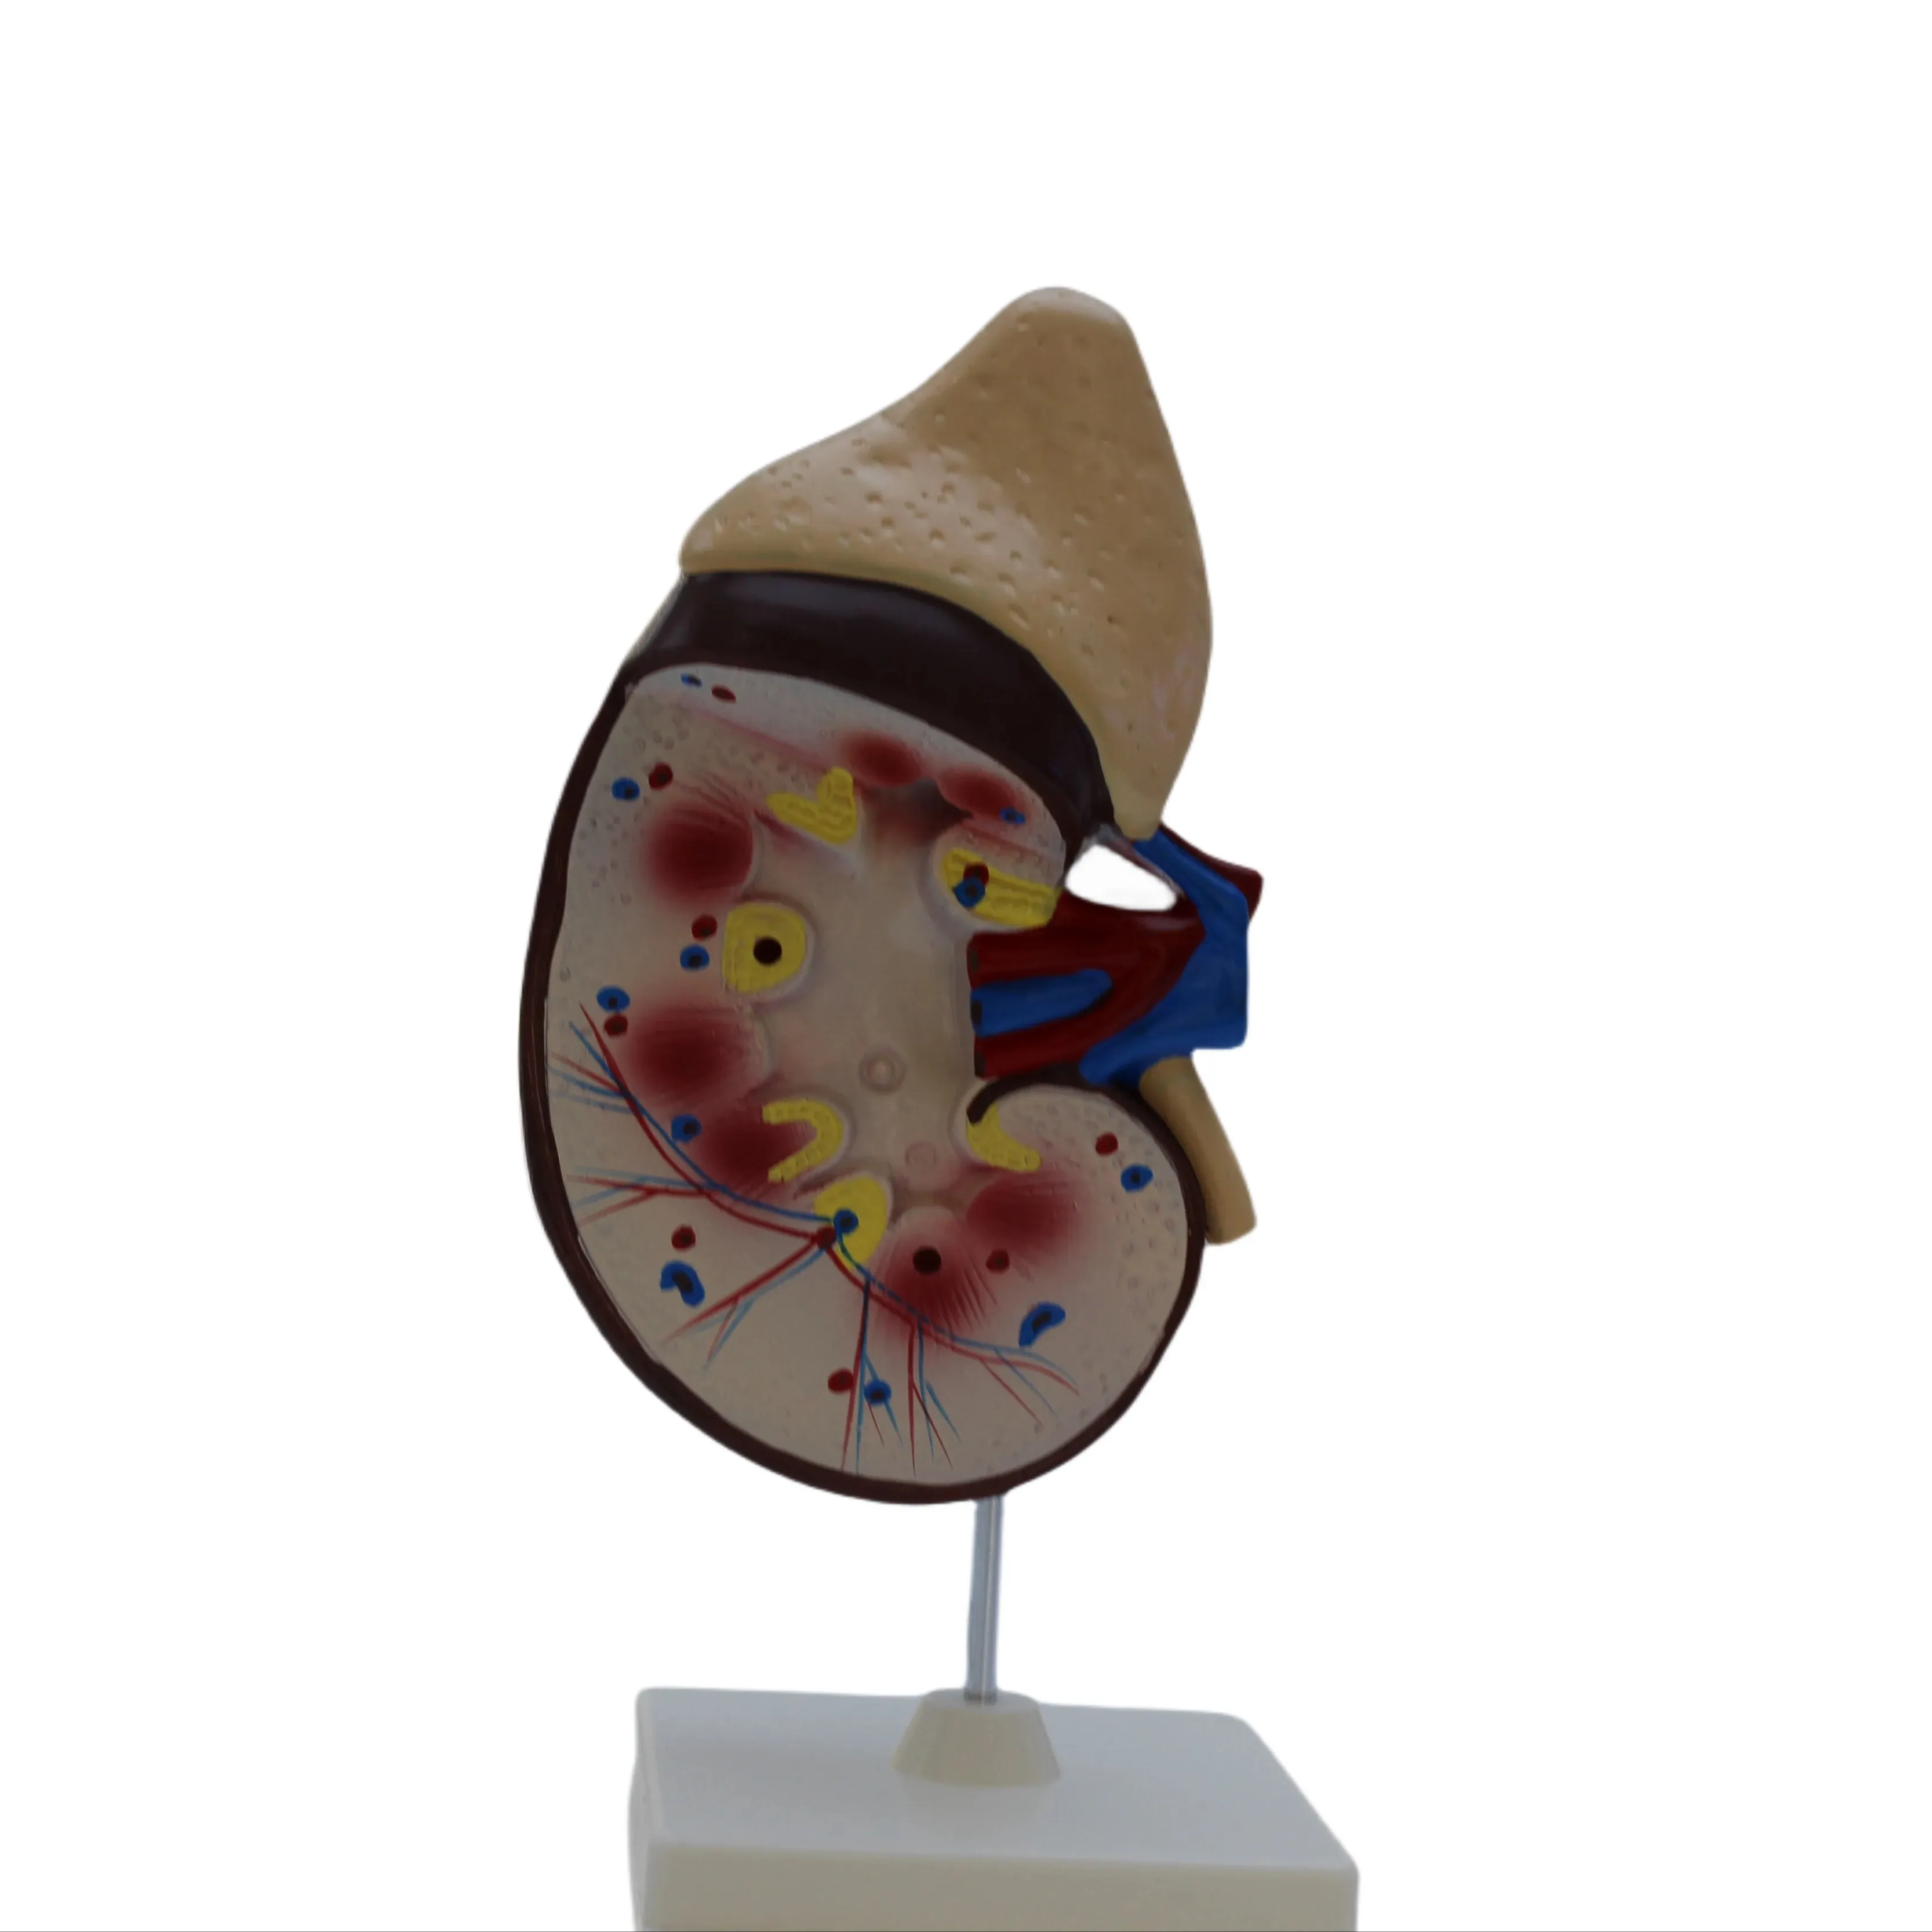 Anatomía del riñón modelo magnificado modelo de riñón órganos internos humanos demostración material didáctico modelo de enseñanza médica